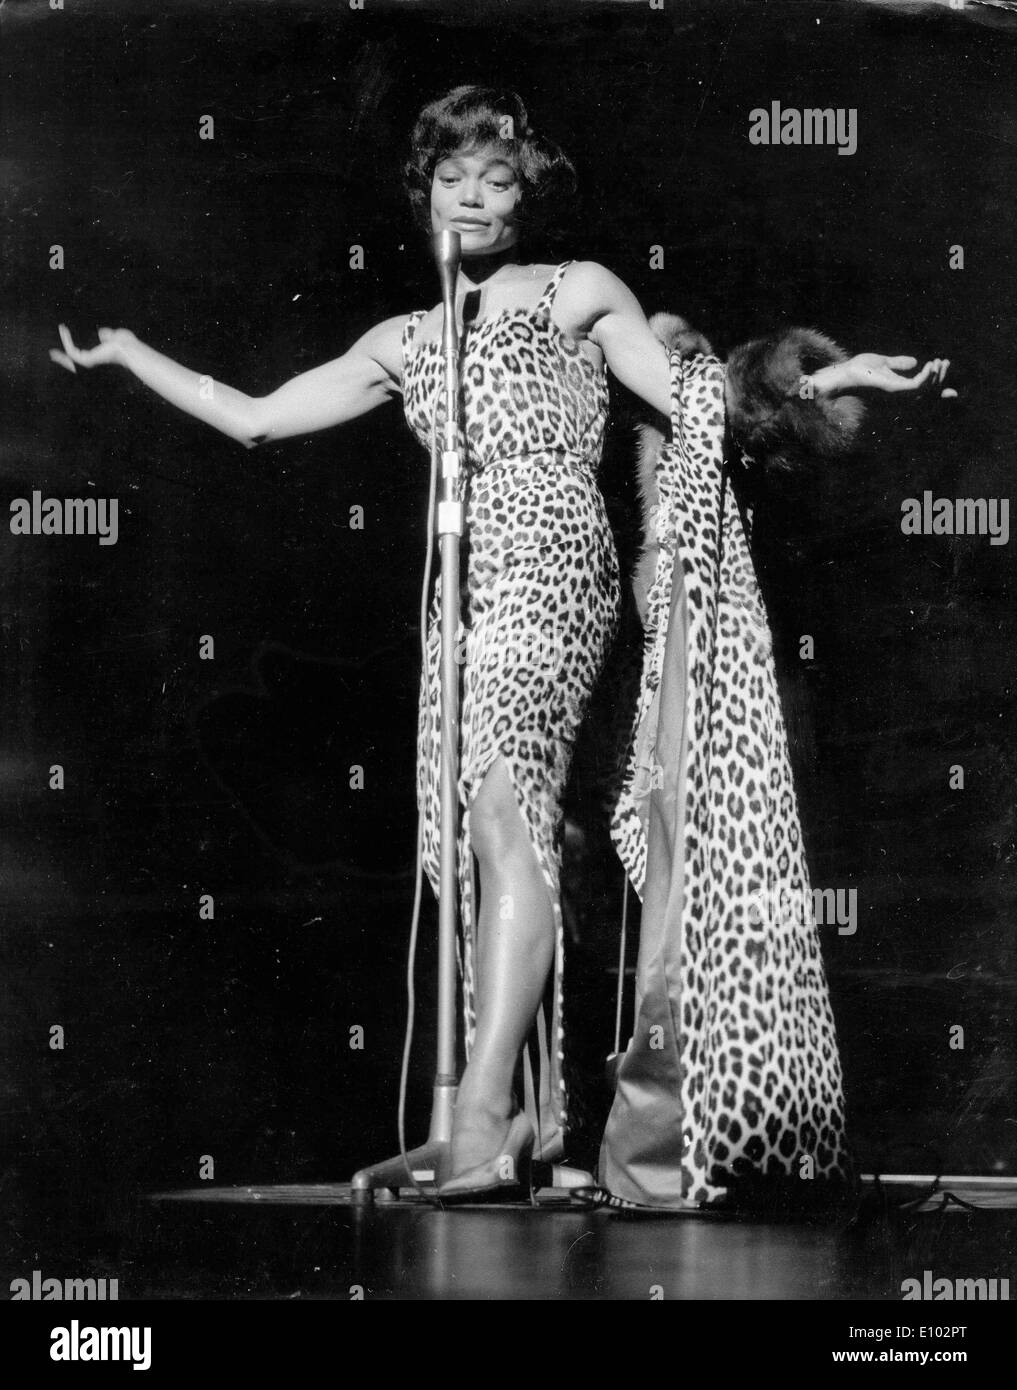 Singer Eartha Kitt performs in leopard print Stock Photo